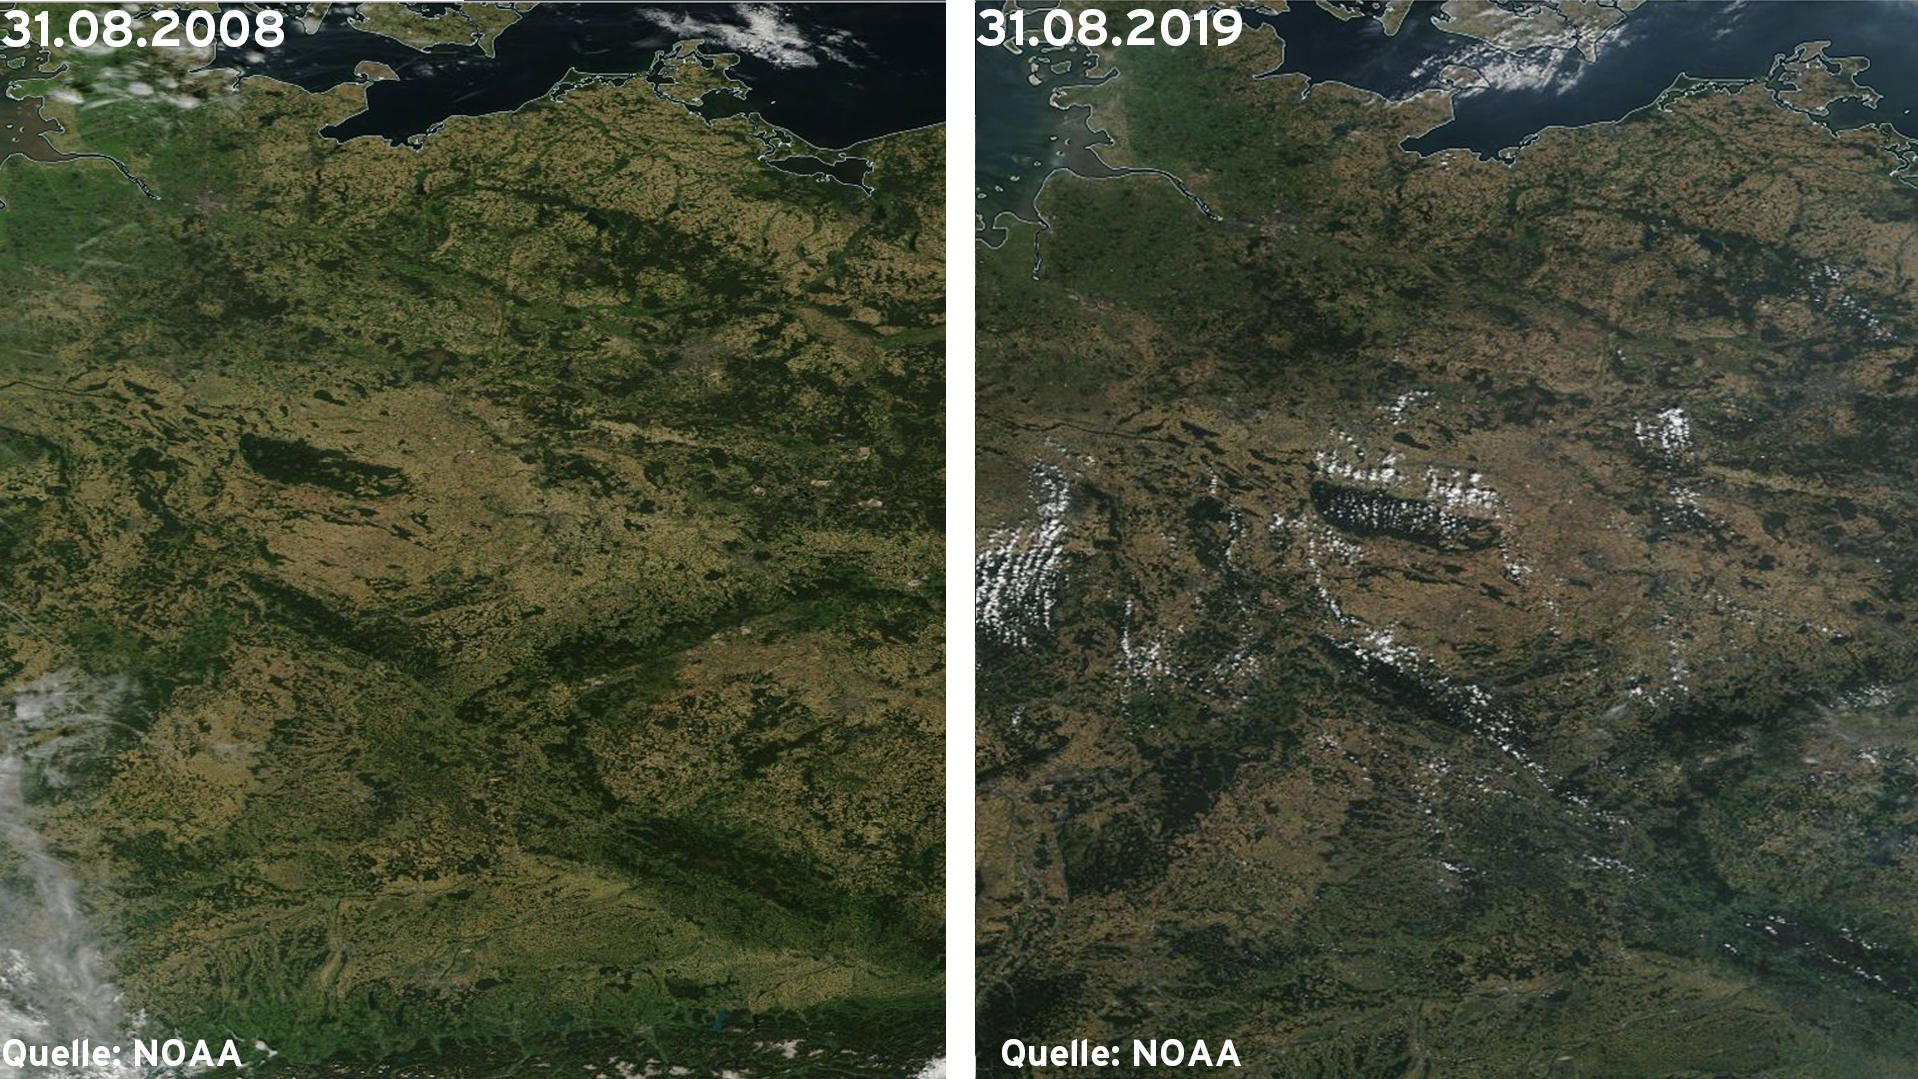 Links: Die Böden sind deutlich trockener (31.08.2019) ; Rechts: Die Flächen sind nicht ganz so braun und etwas grüner (31.08.2008)